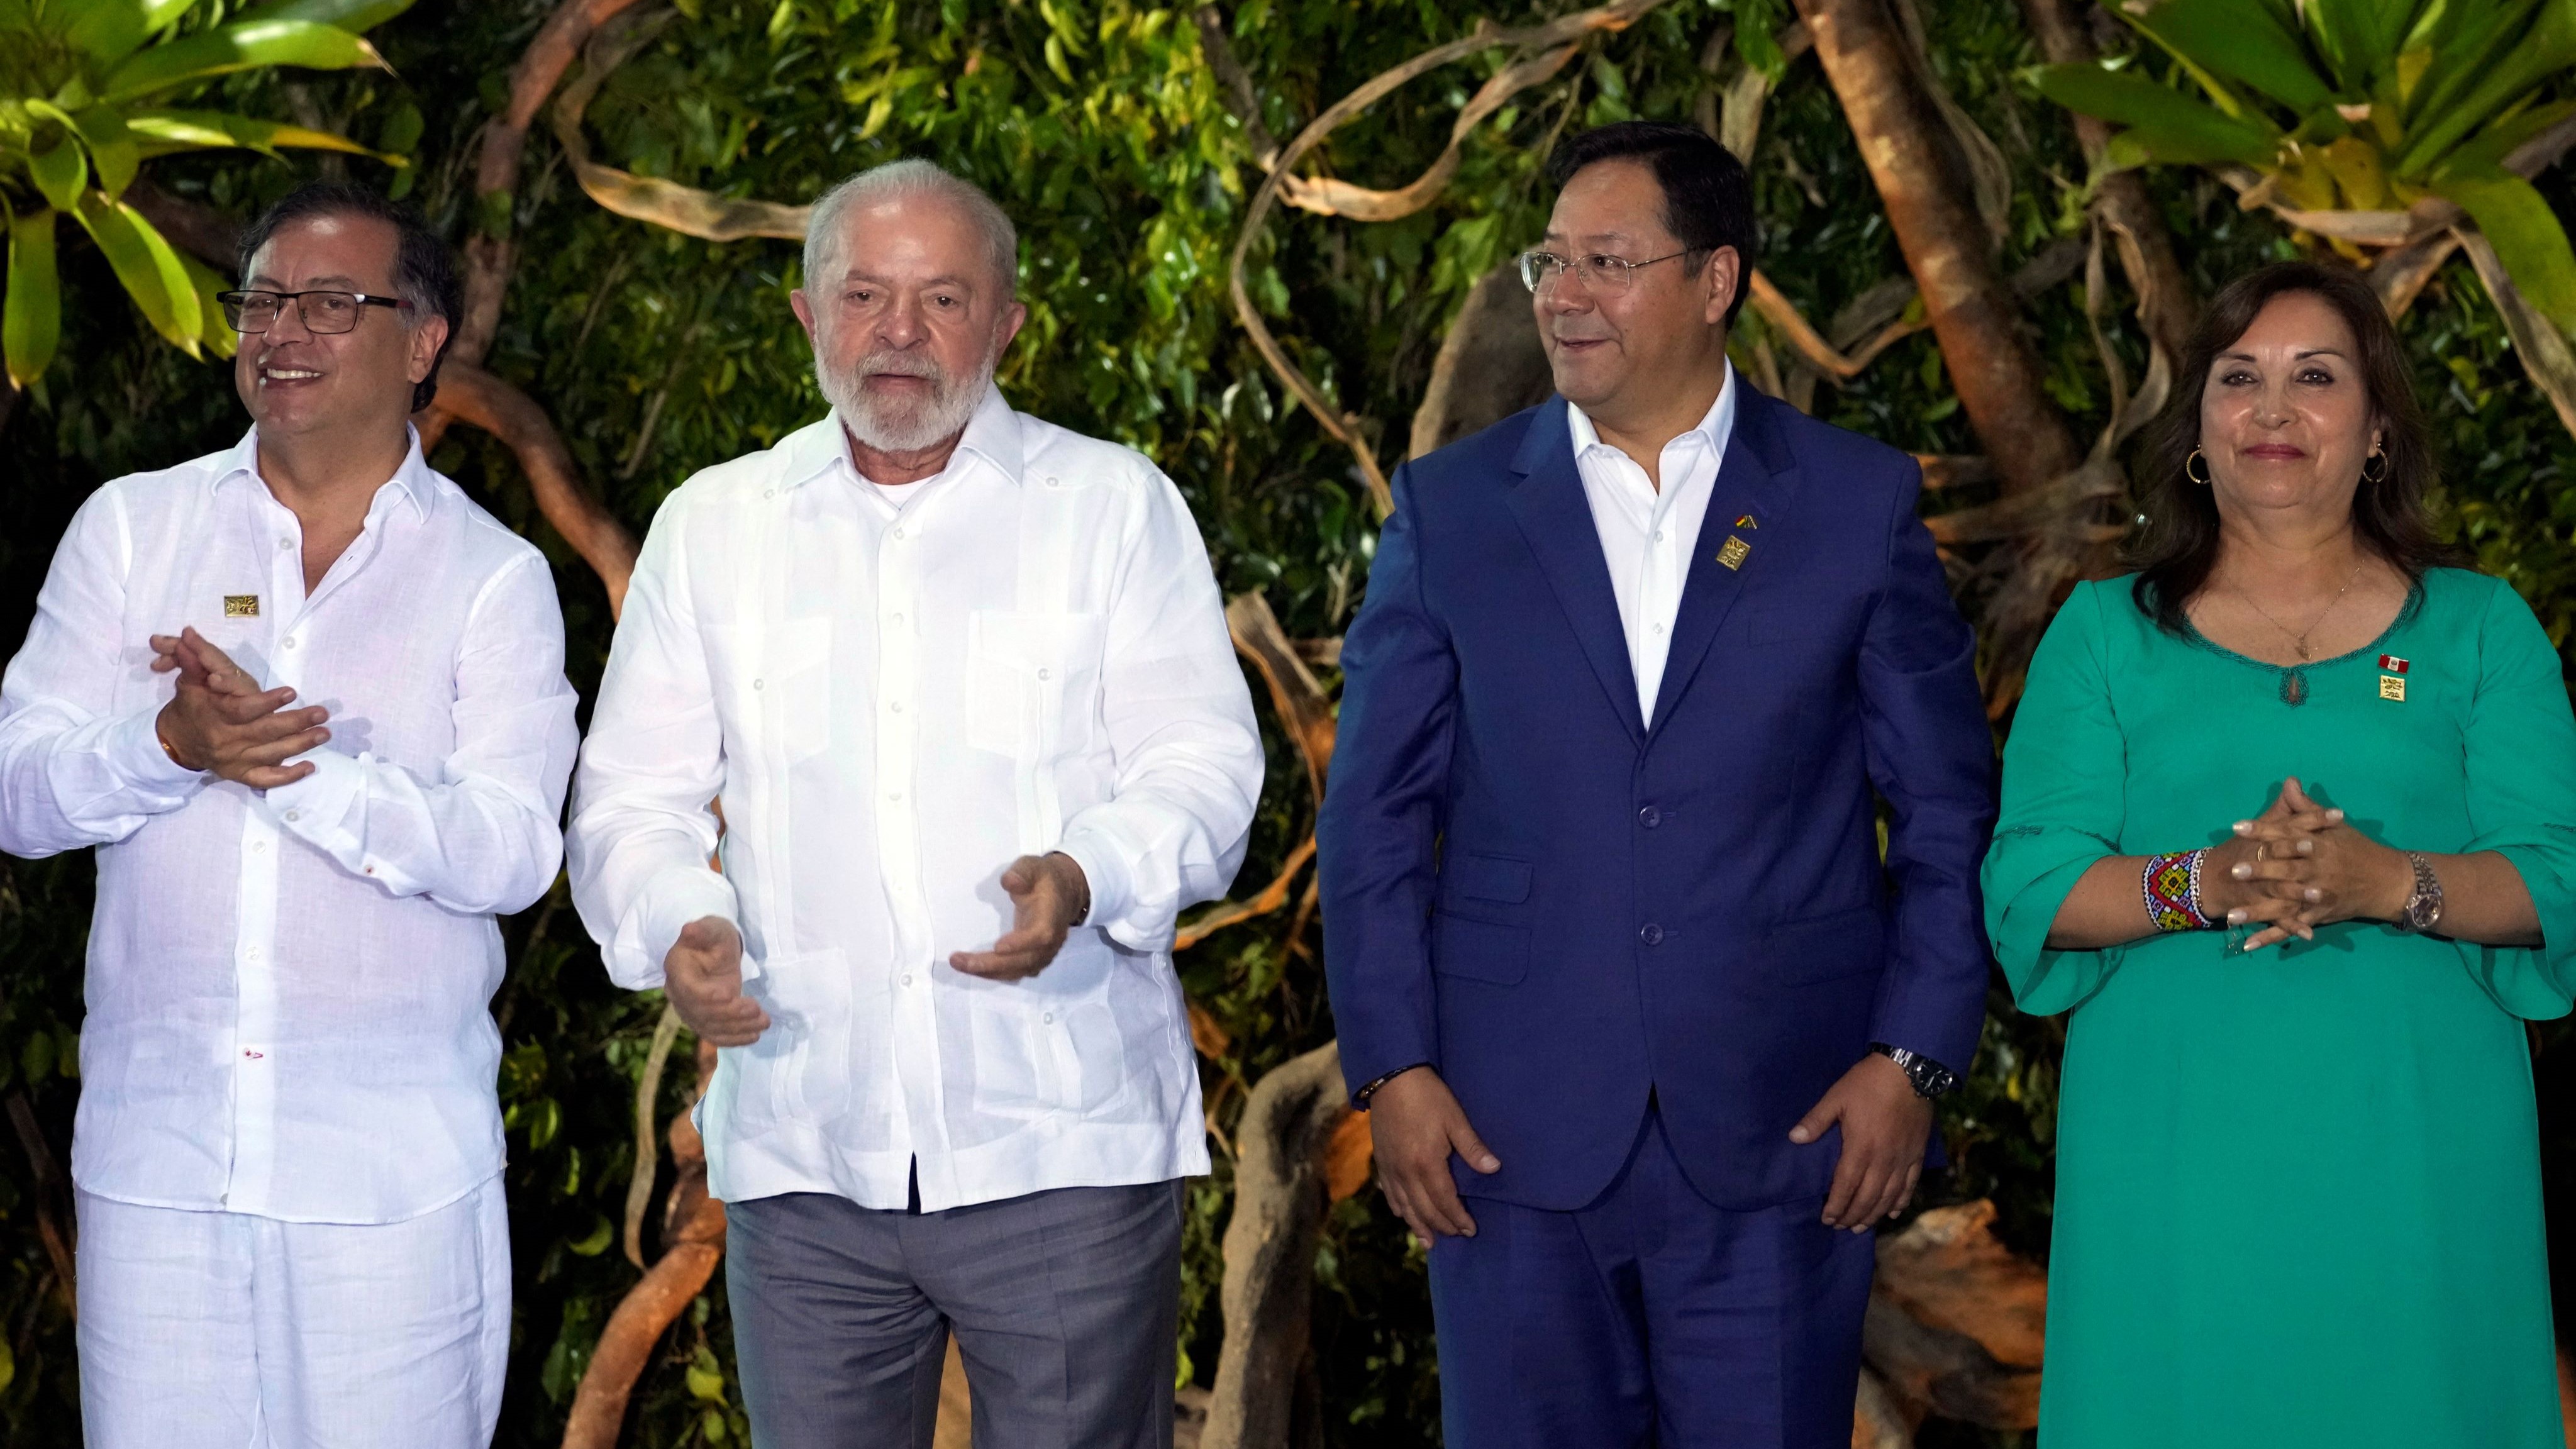 コロンビアのグスタボ・ペトロ大統領、ブラジルのルイス・イナシオ・ルーラ・ダ・シルバ大統領、ボリビアのルイス・アルセ大統領、ペルーのディナ・ボルアルテ大統領。